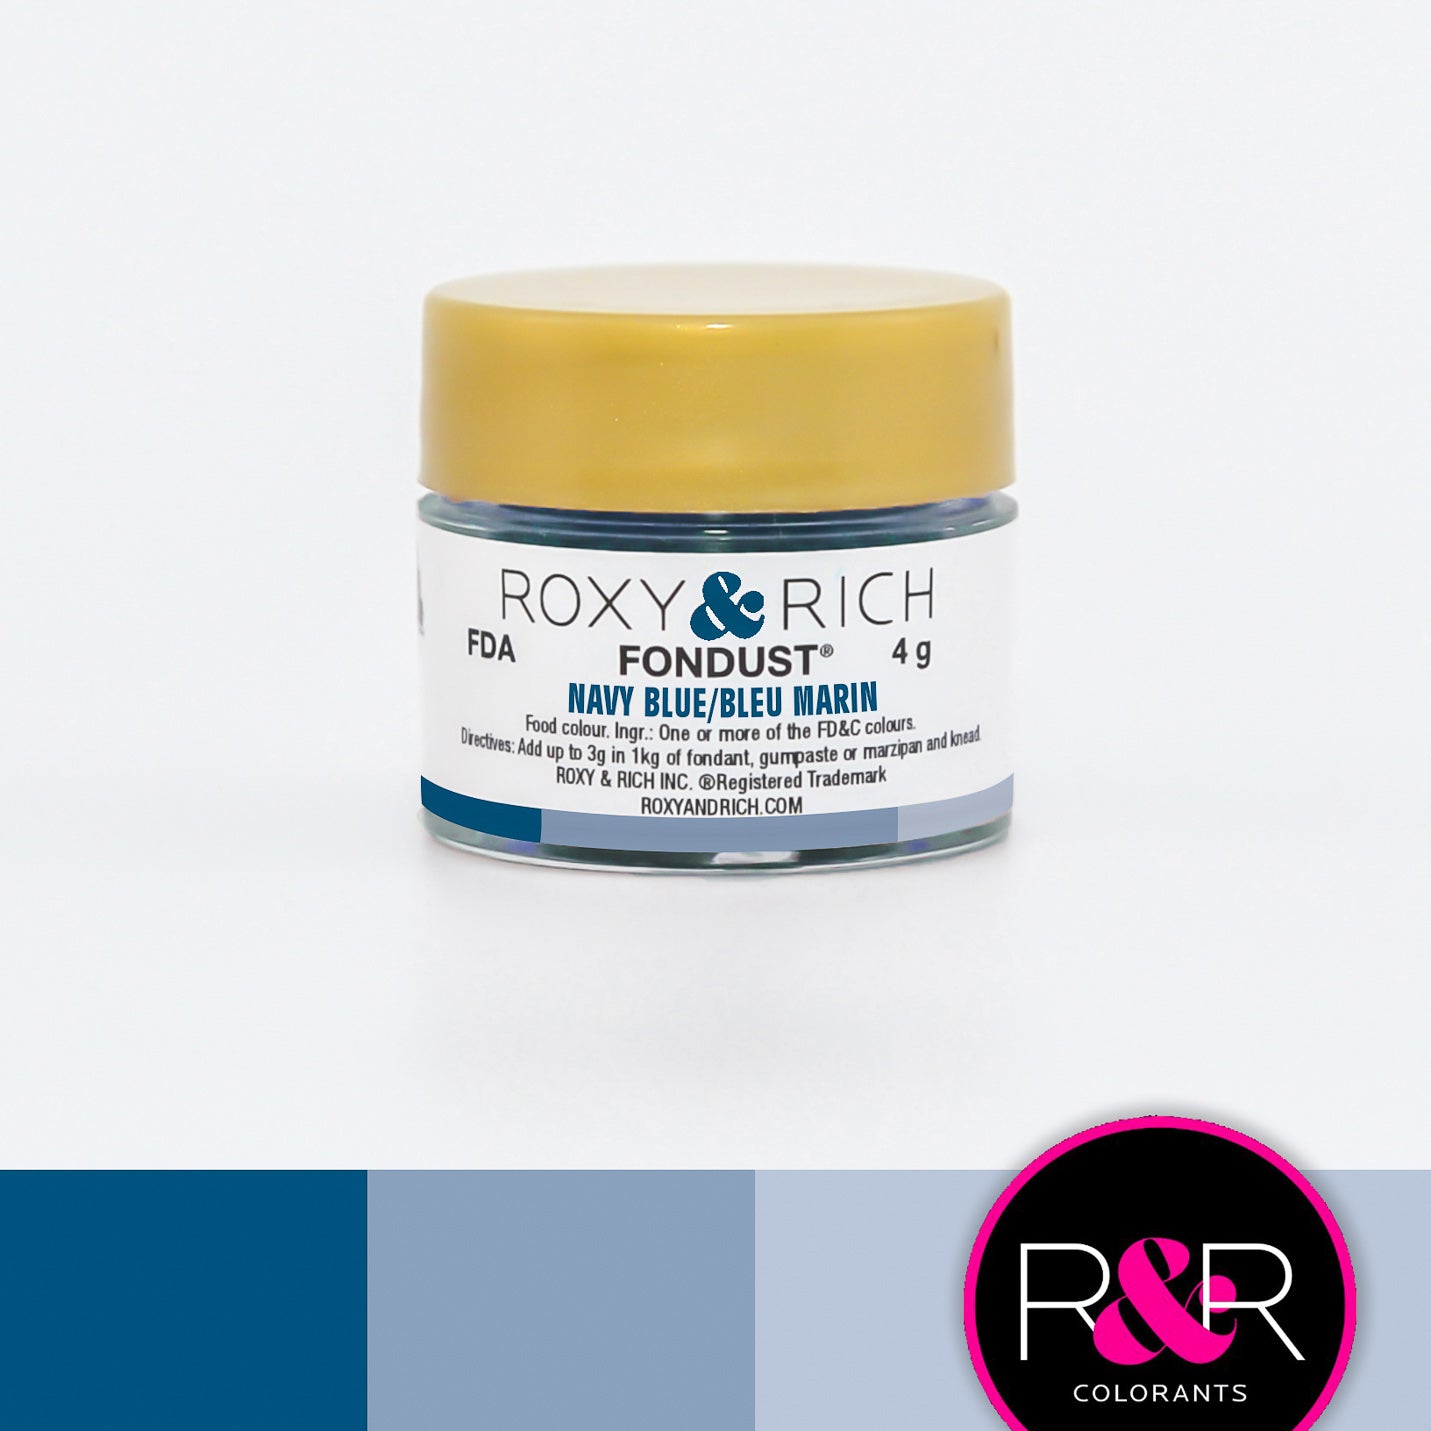 Colorant FONDUST Bleu Marin 4g   - Roxy & Rich - Colorant alimentaire hydrosoluble - F4-025